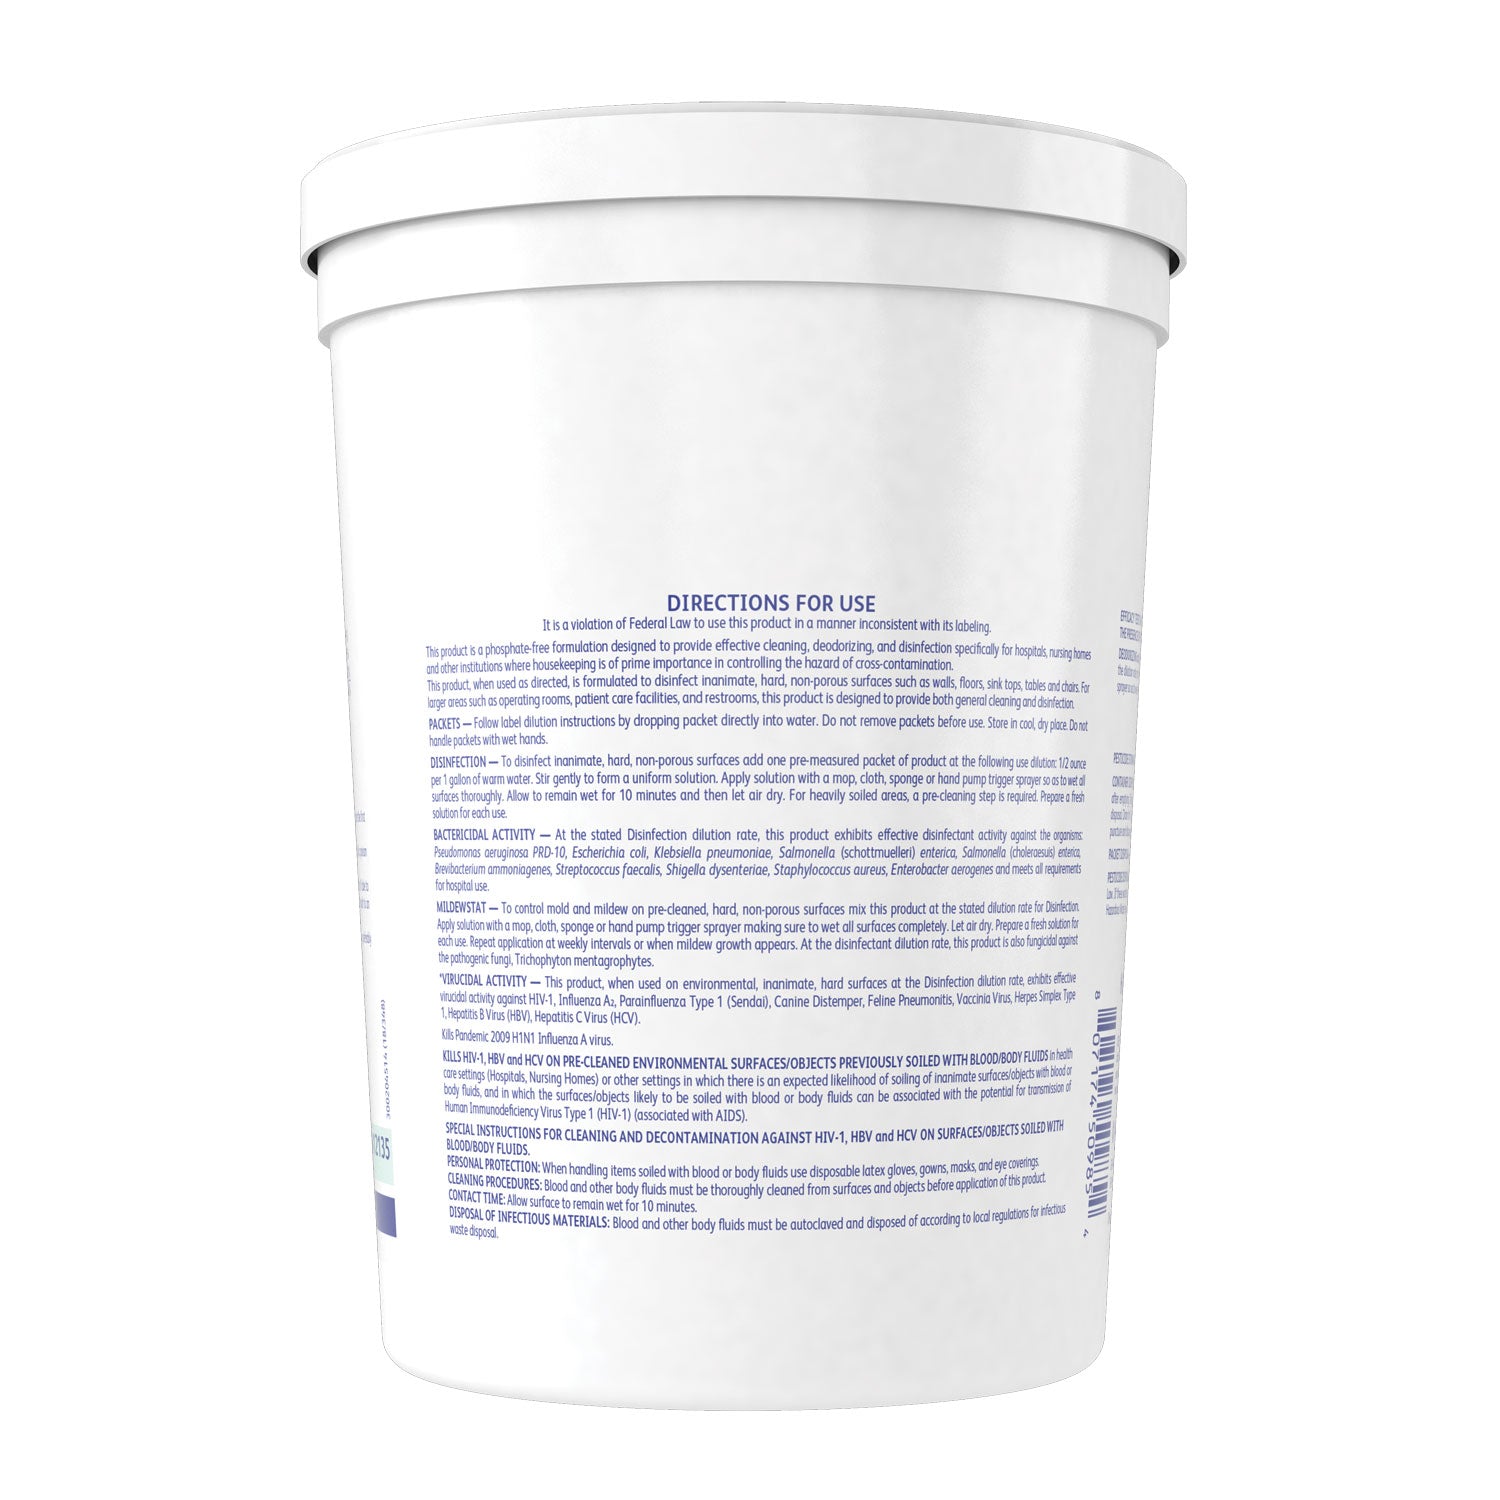 Detergent/Disinfectant, Lemon Scent, 0.5 oz Packet, 90/Tub, 2 Tubs/Carton - 